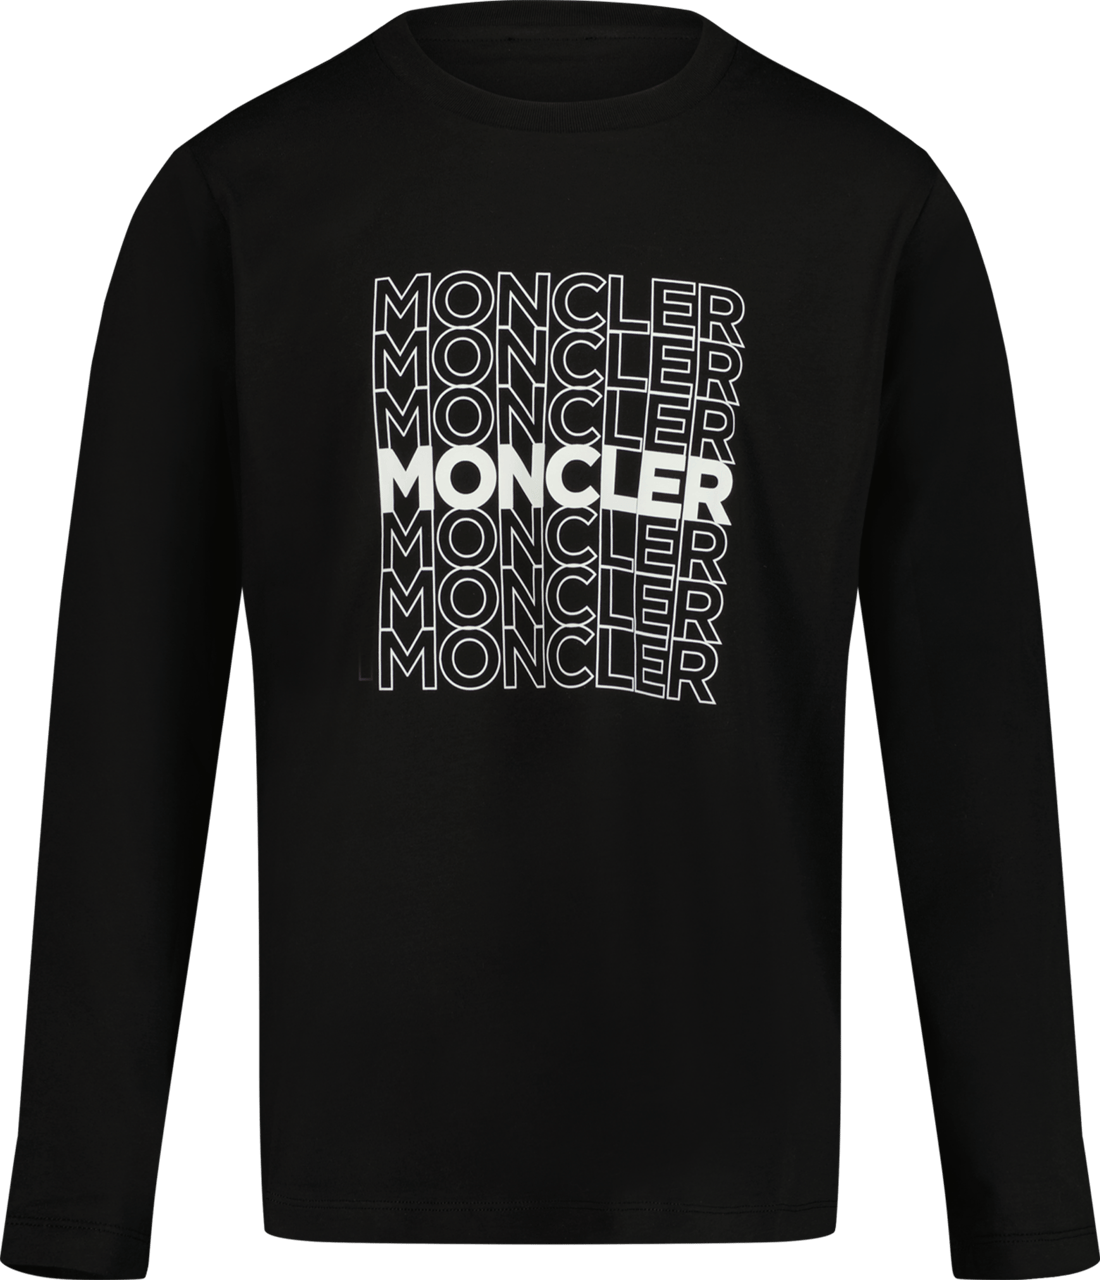 Moncler Moncler Kinder Jongens T-Shirt Zwart Zwart